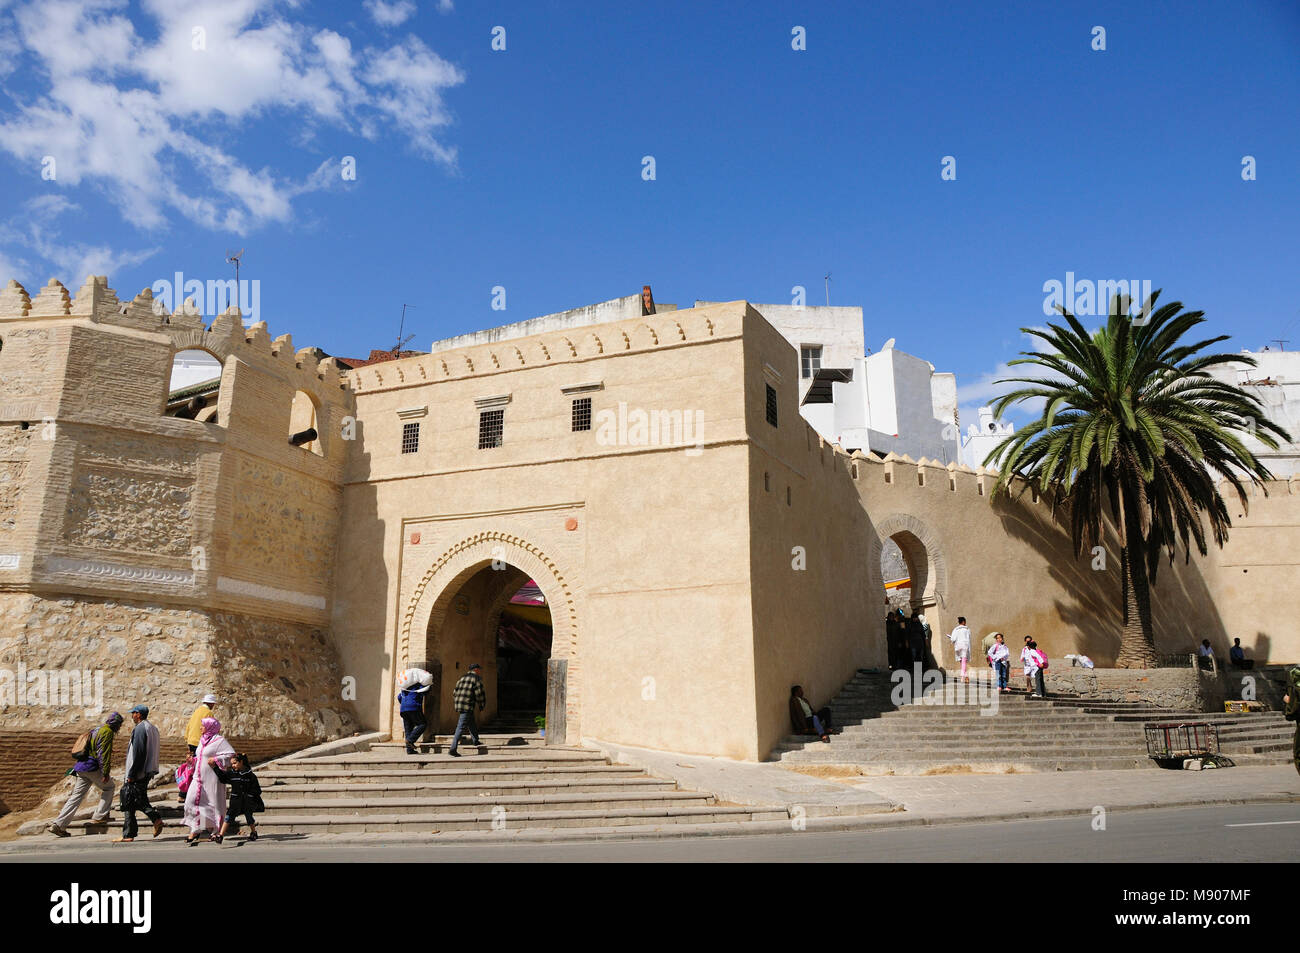 La ville de Tétouan. Site du patrimoine mondial de l'UNESCO. Maroc Banque D'Images